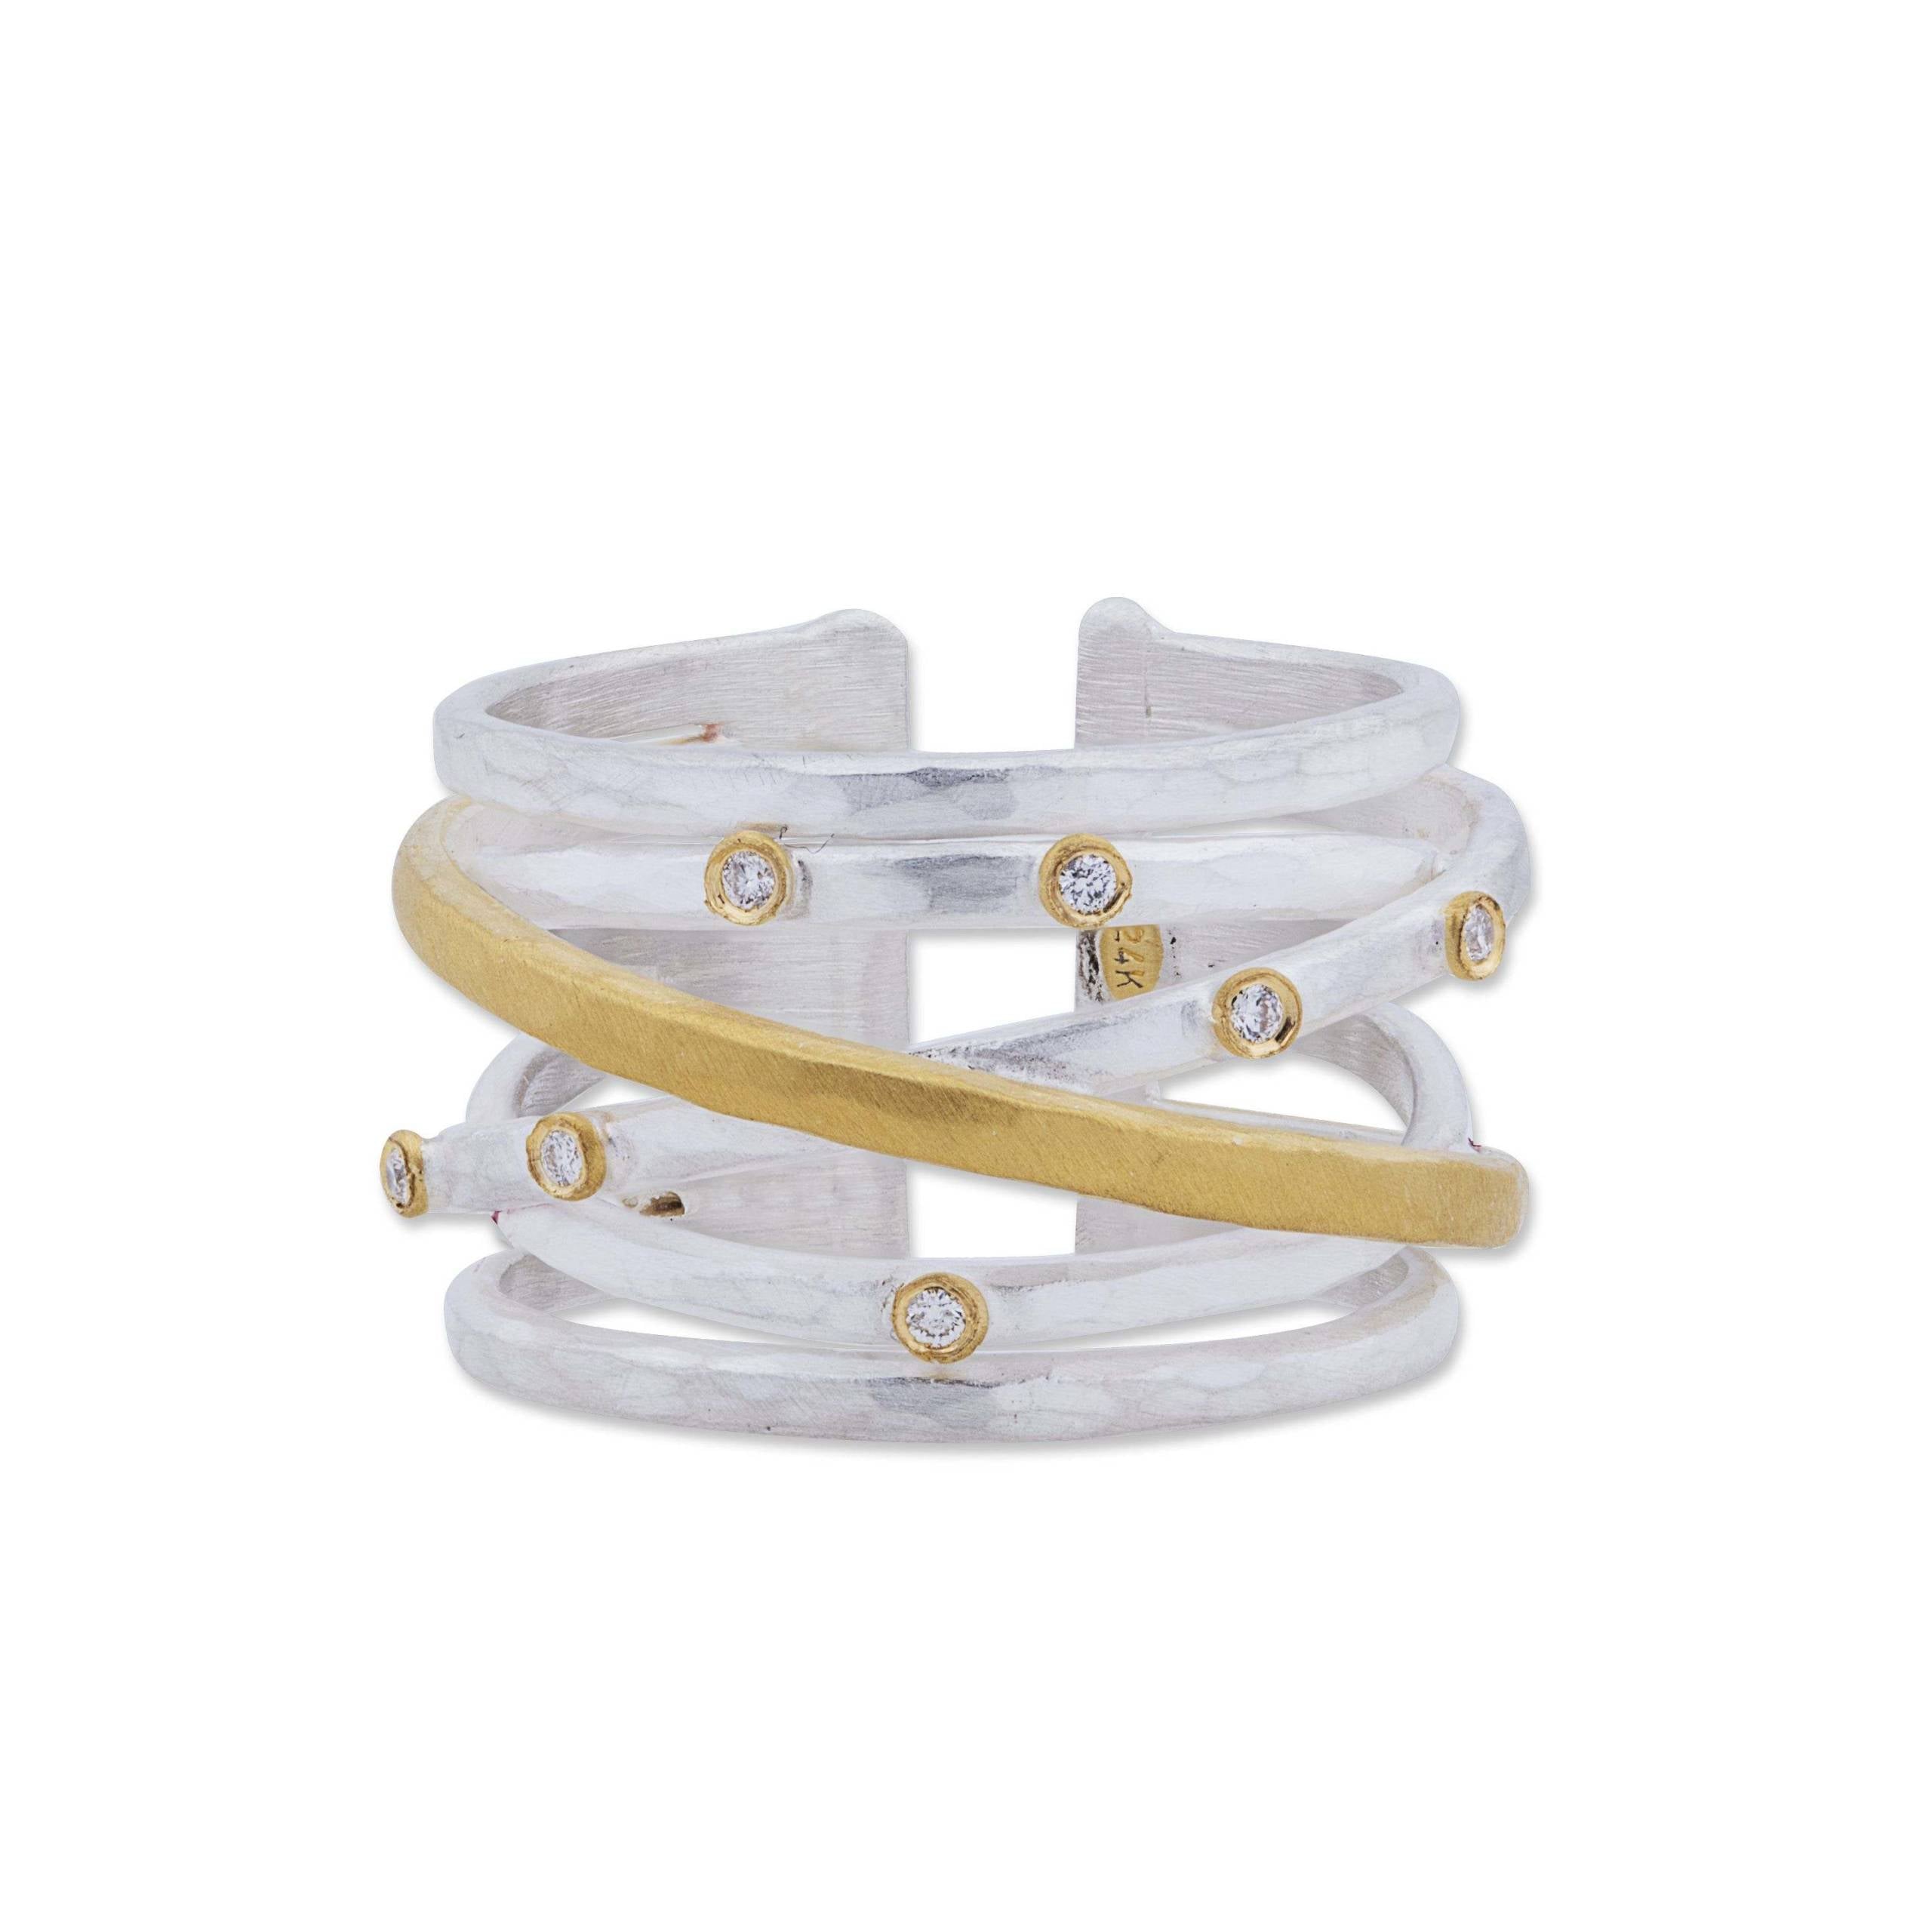 Gold Twist Buckle - Peachy Belts